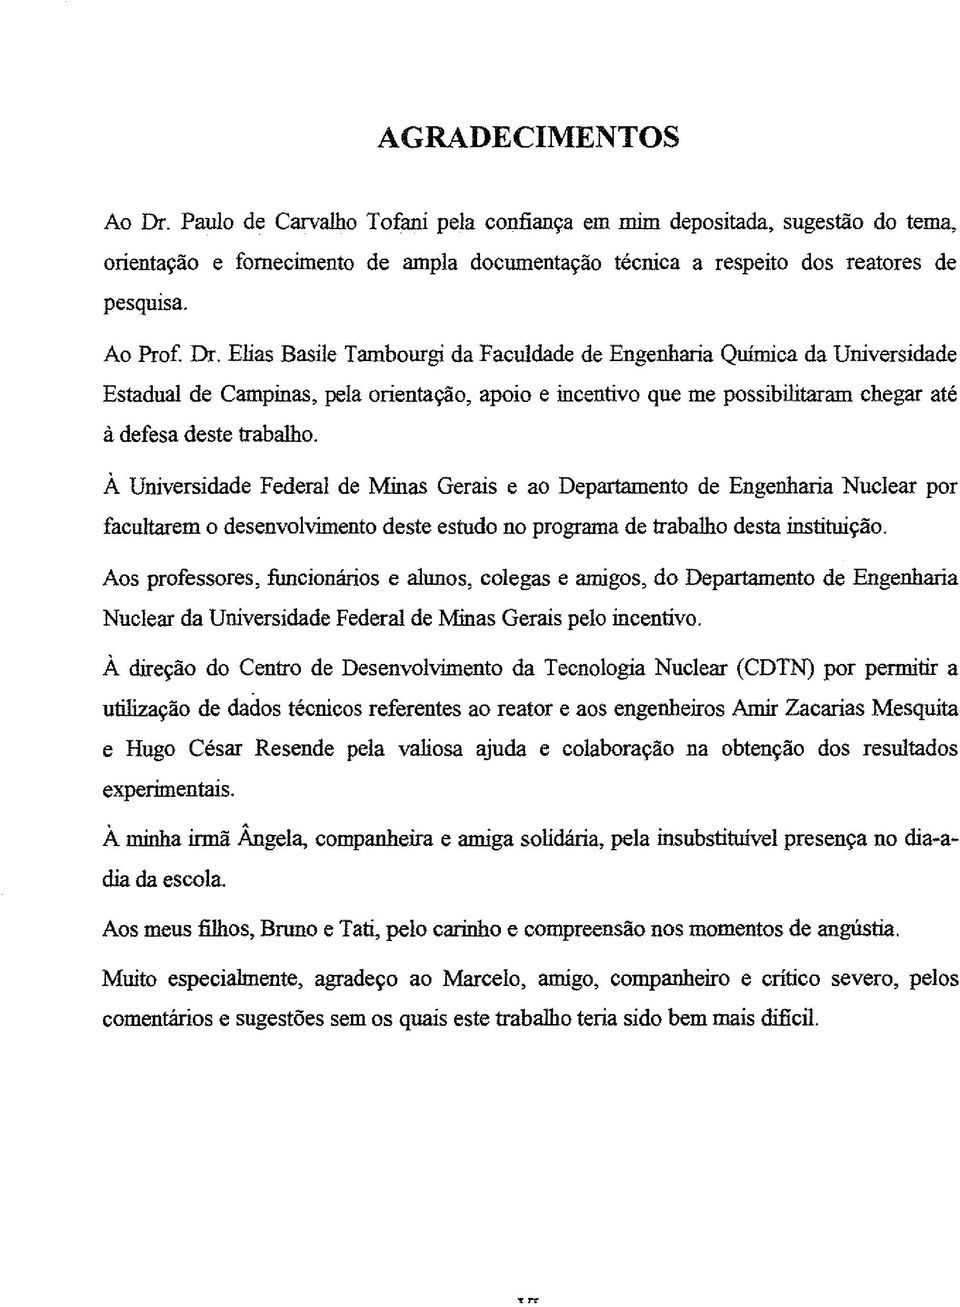 À Universidade Federal de Minas Gerais e ao Departamento de Engenharia Nuclear por facultarem o desenvolvimento deste estudo no programa de trabalho desta instituição.